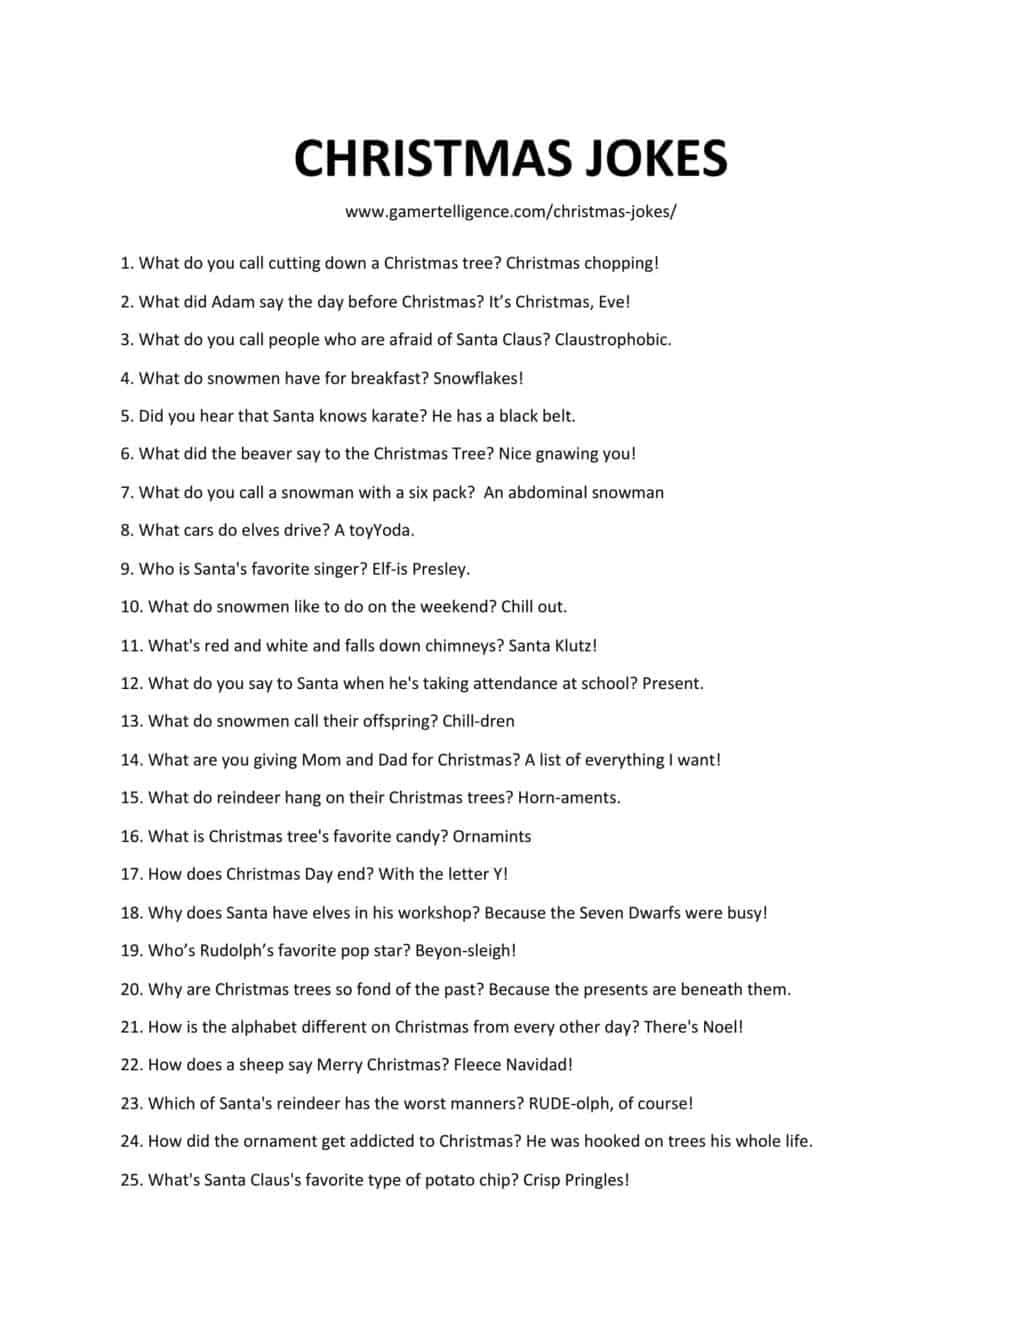 Downloadable and printable list of Christmas jokes as jpg or pdf